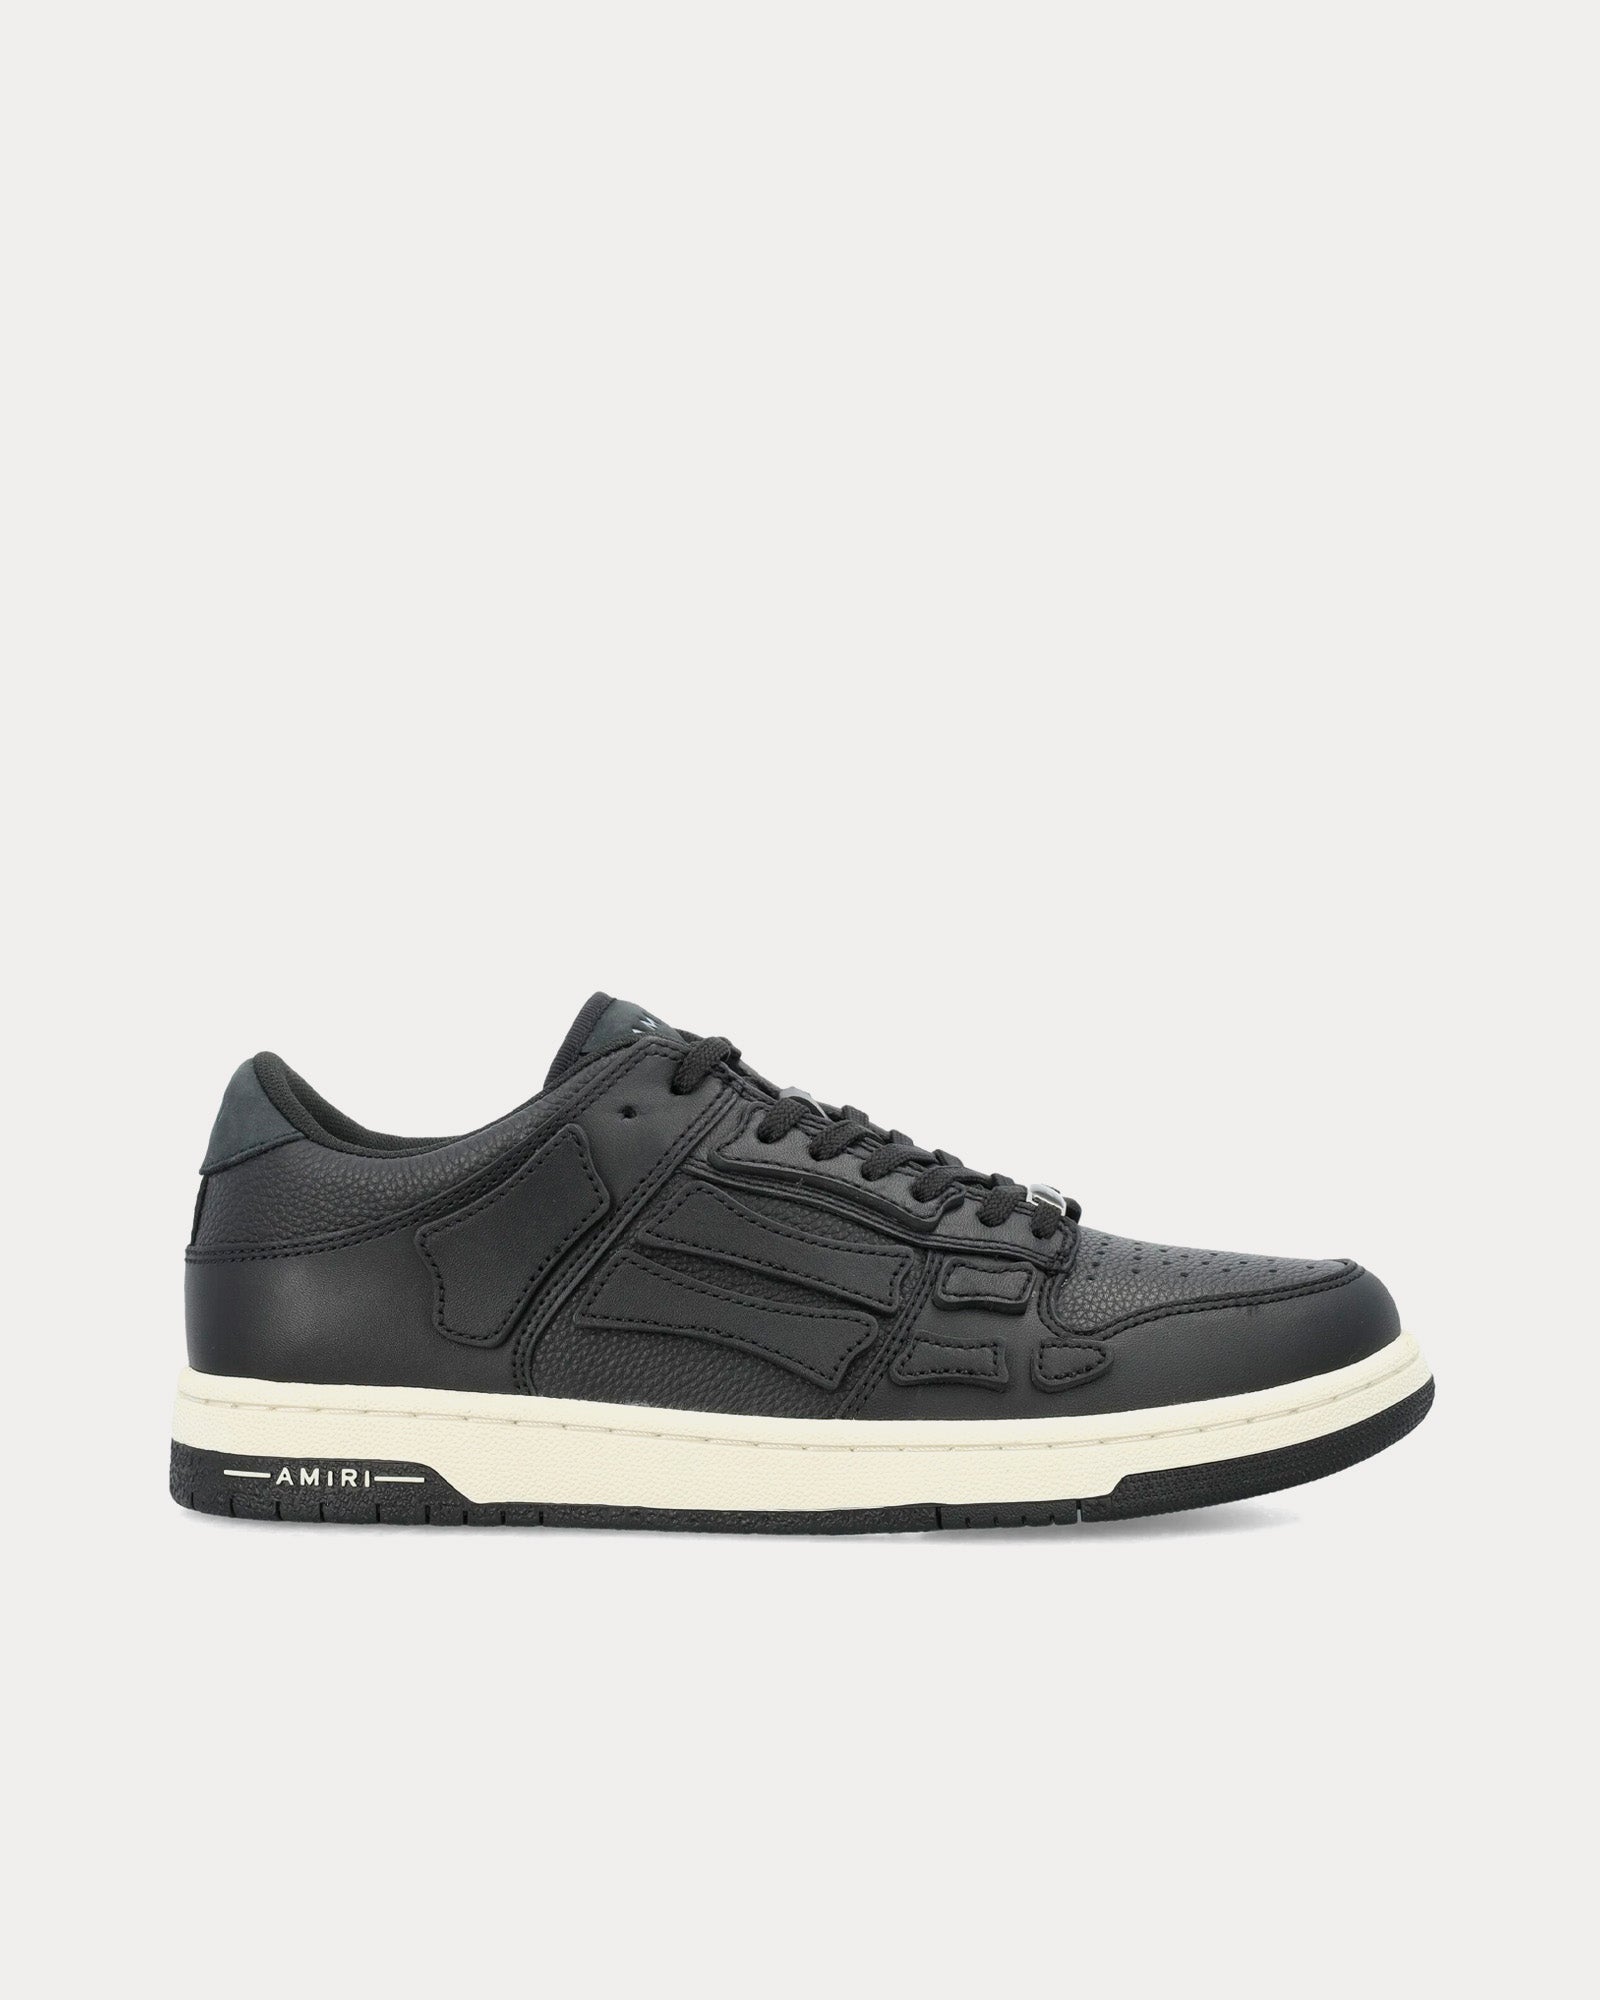 AMIRI - Skel-Top Leather Black Low Top Sneakers